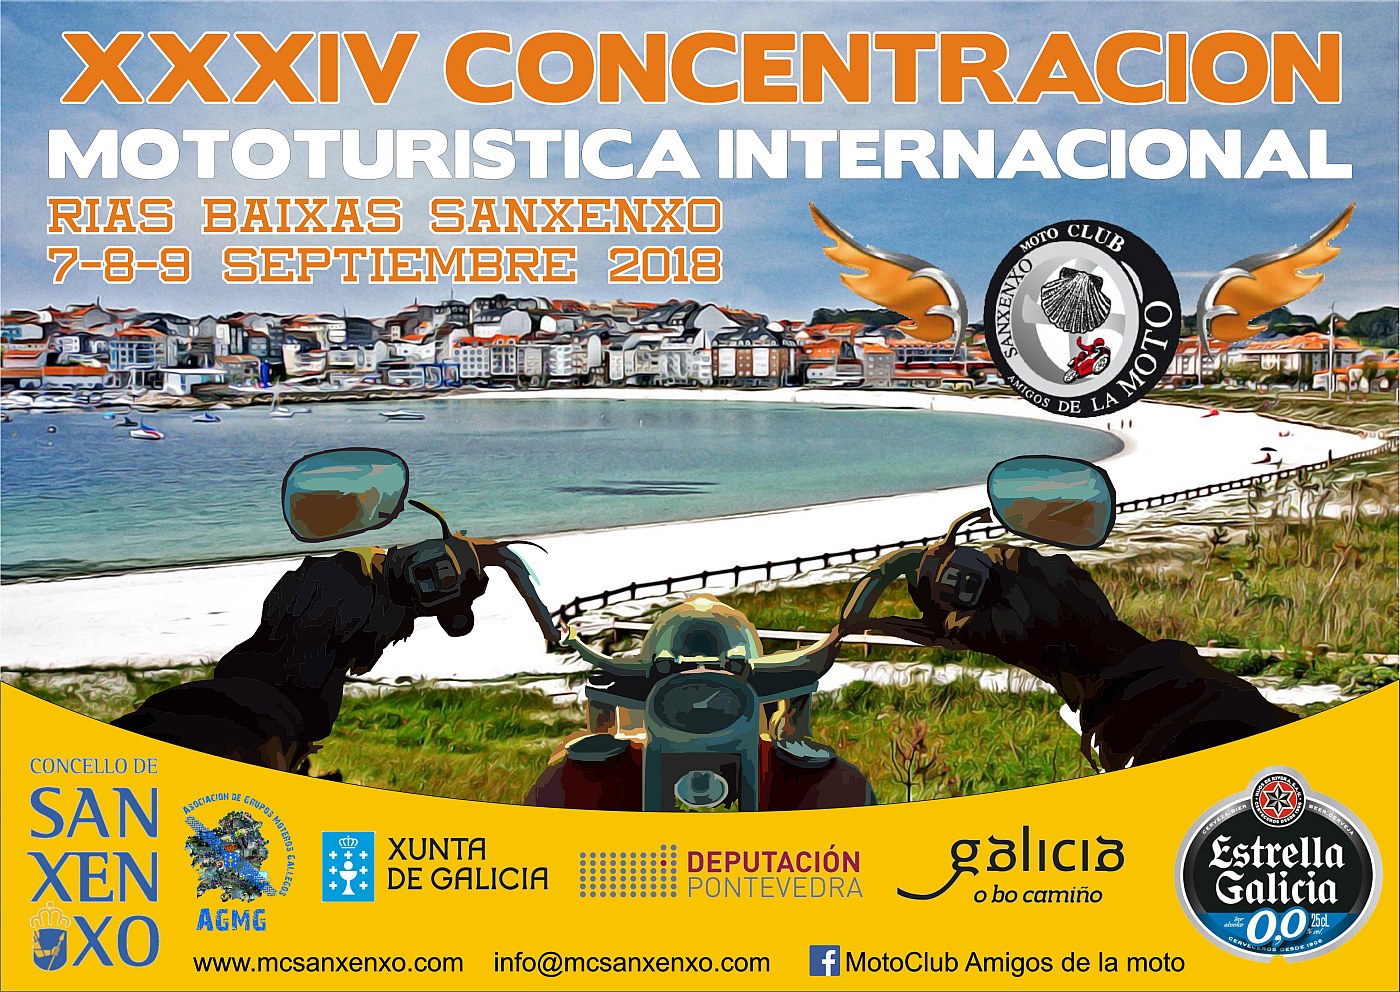 XXXIVª Concentración Mototurística Internacional Rias Baixas Sanxenxo